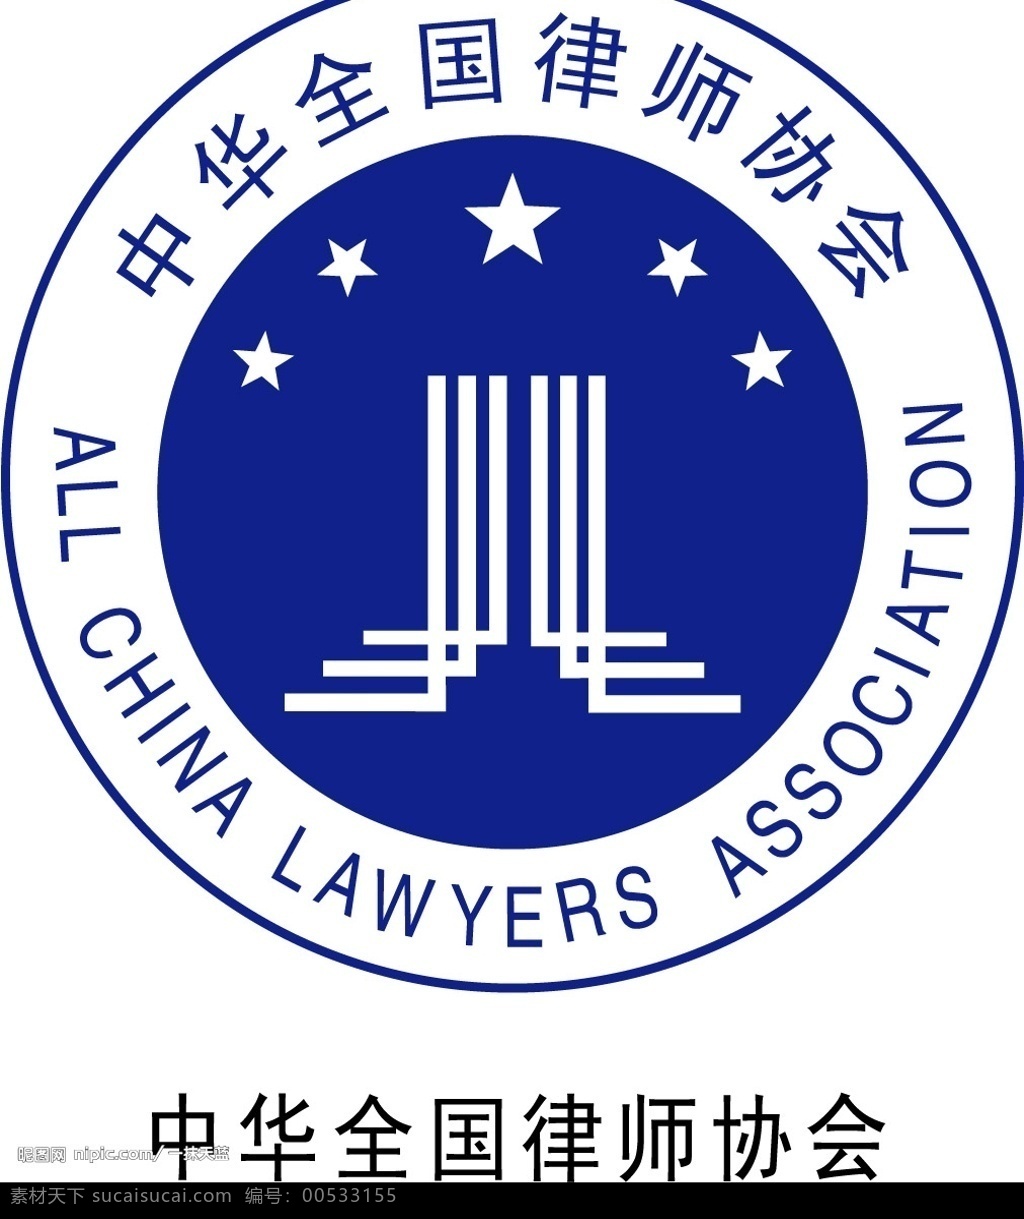 中华全国律师协会 中国律师 标识标志图标 公共标识标志 矢量图库